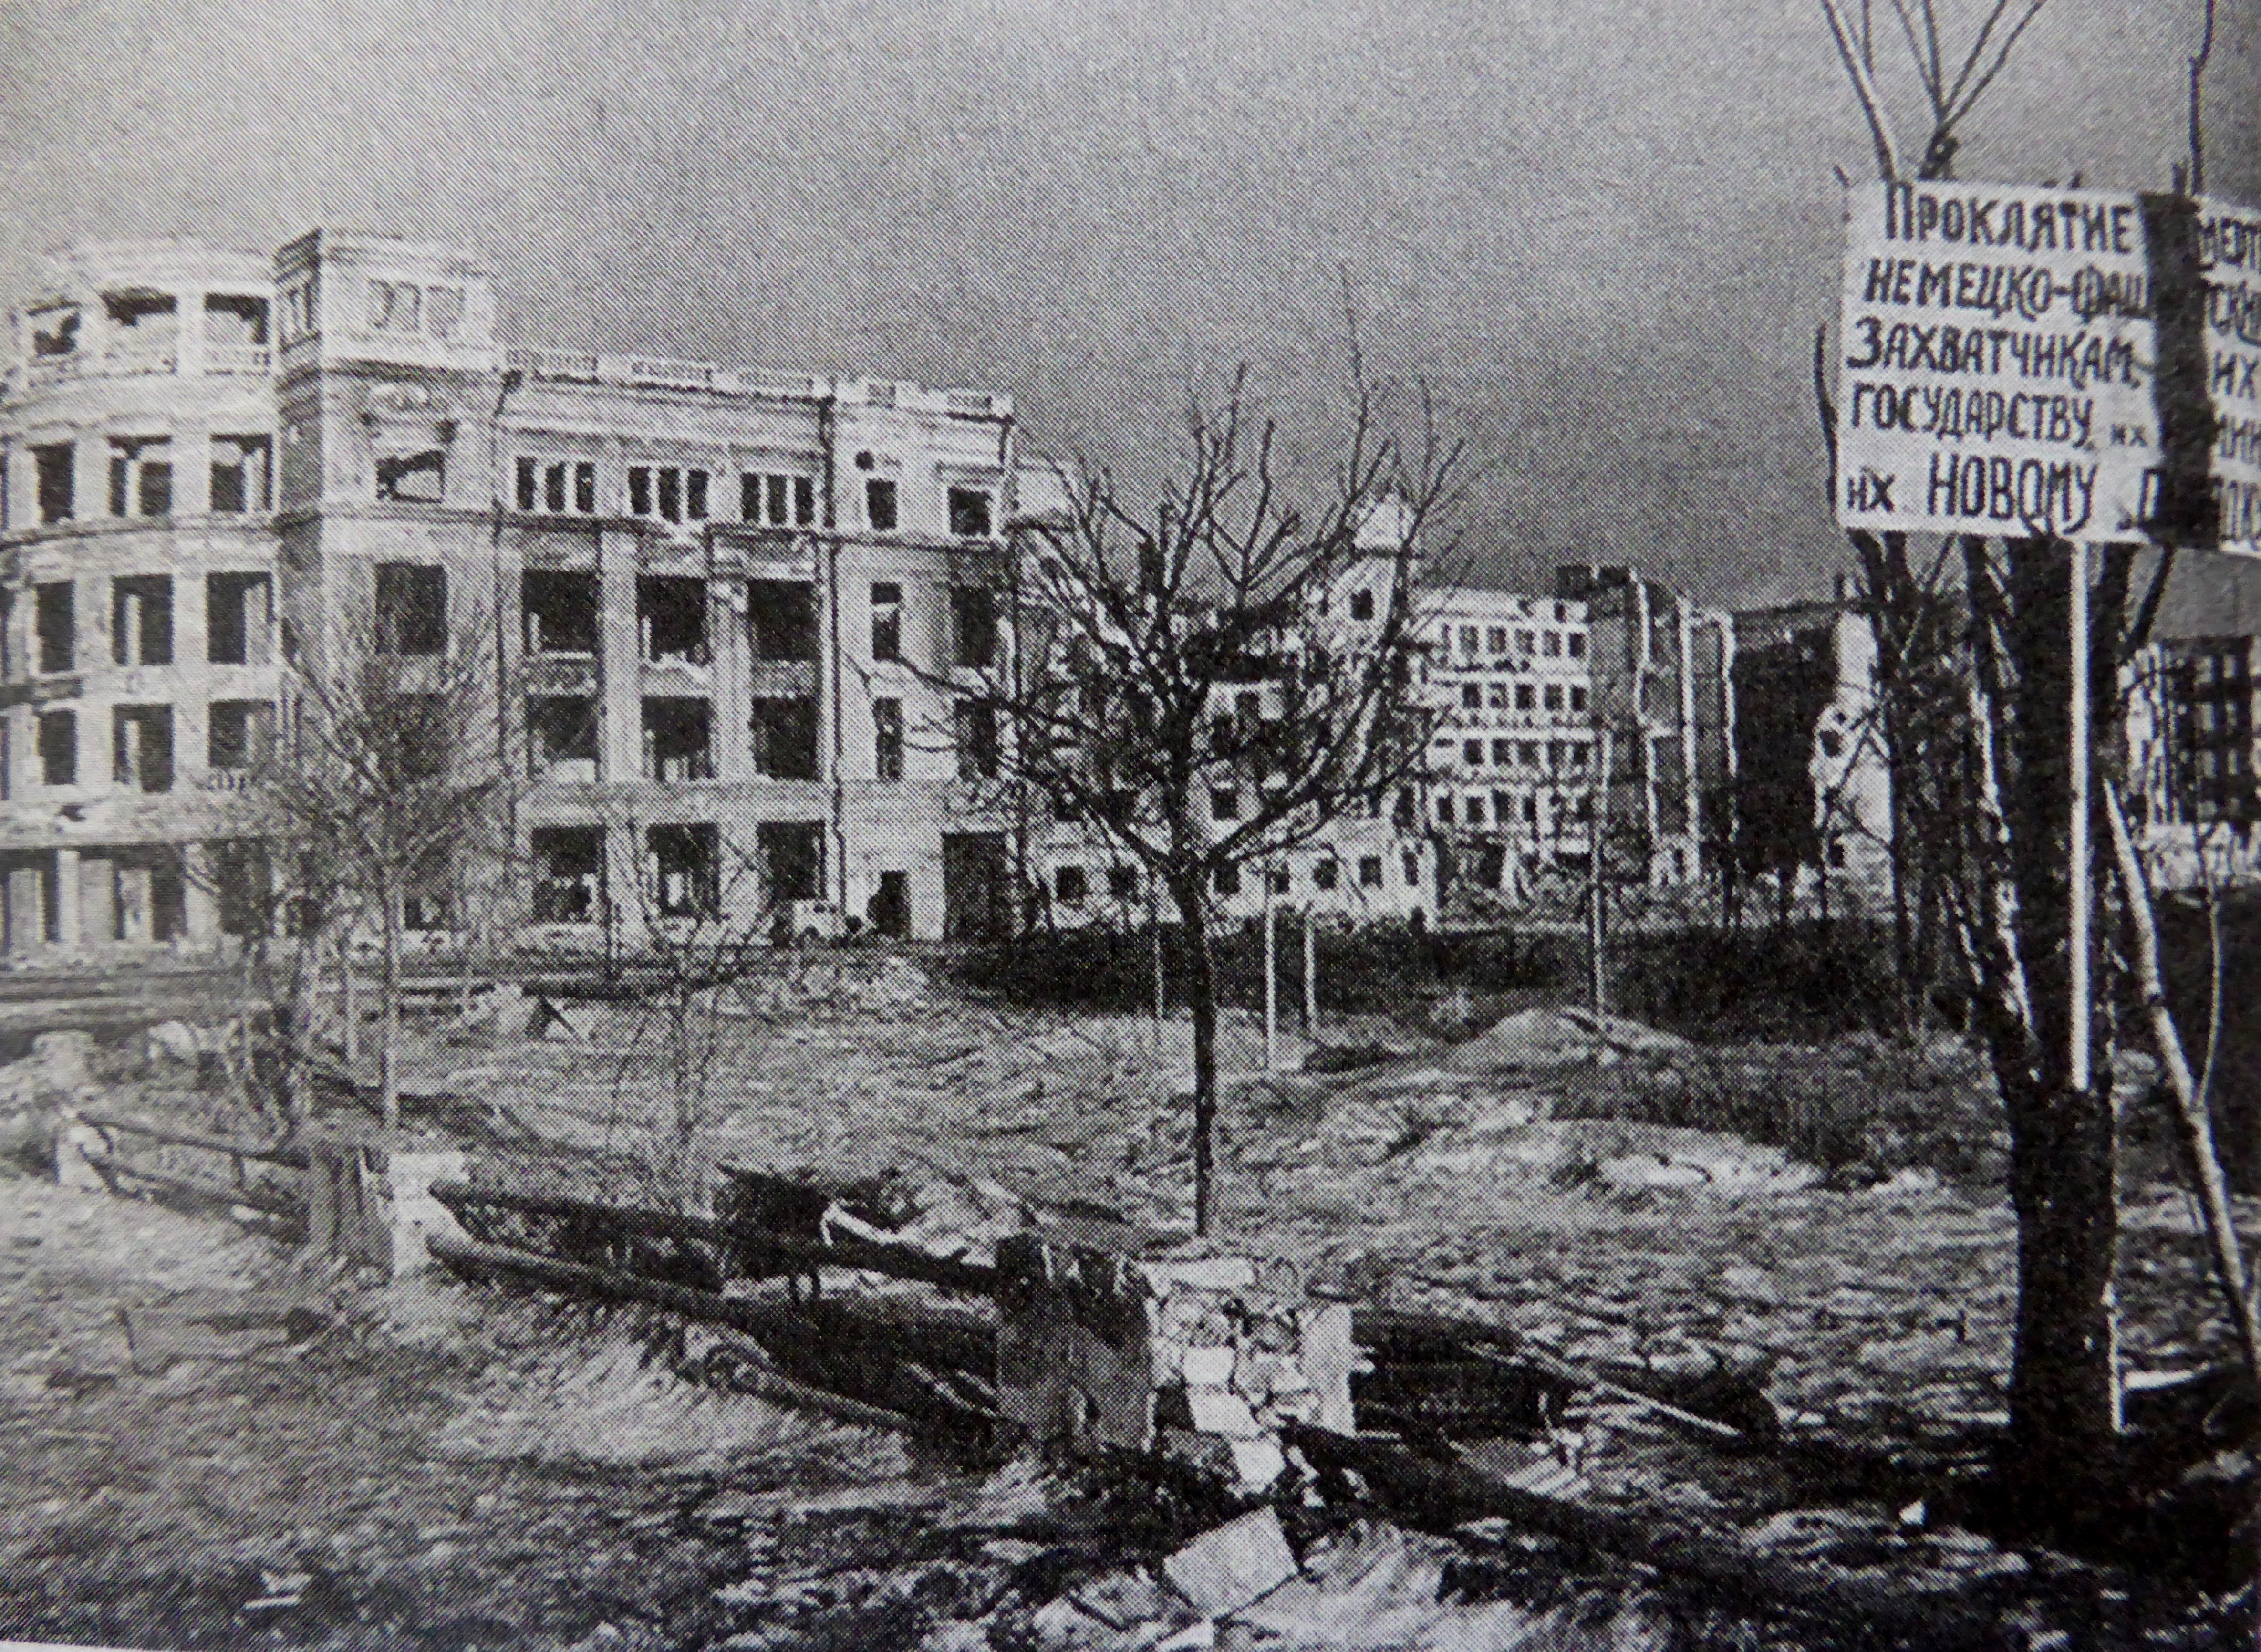 Сталинград площадь павших борцов 1942